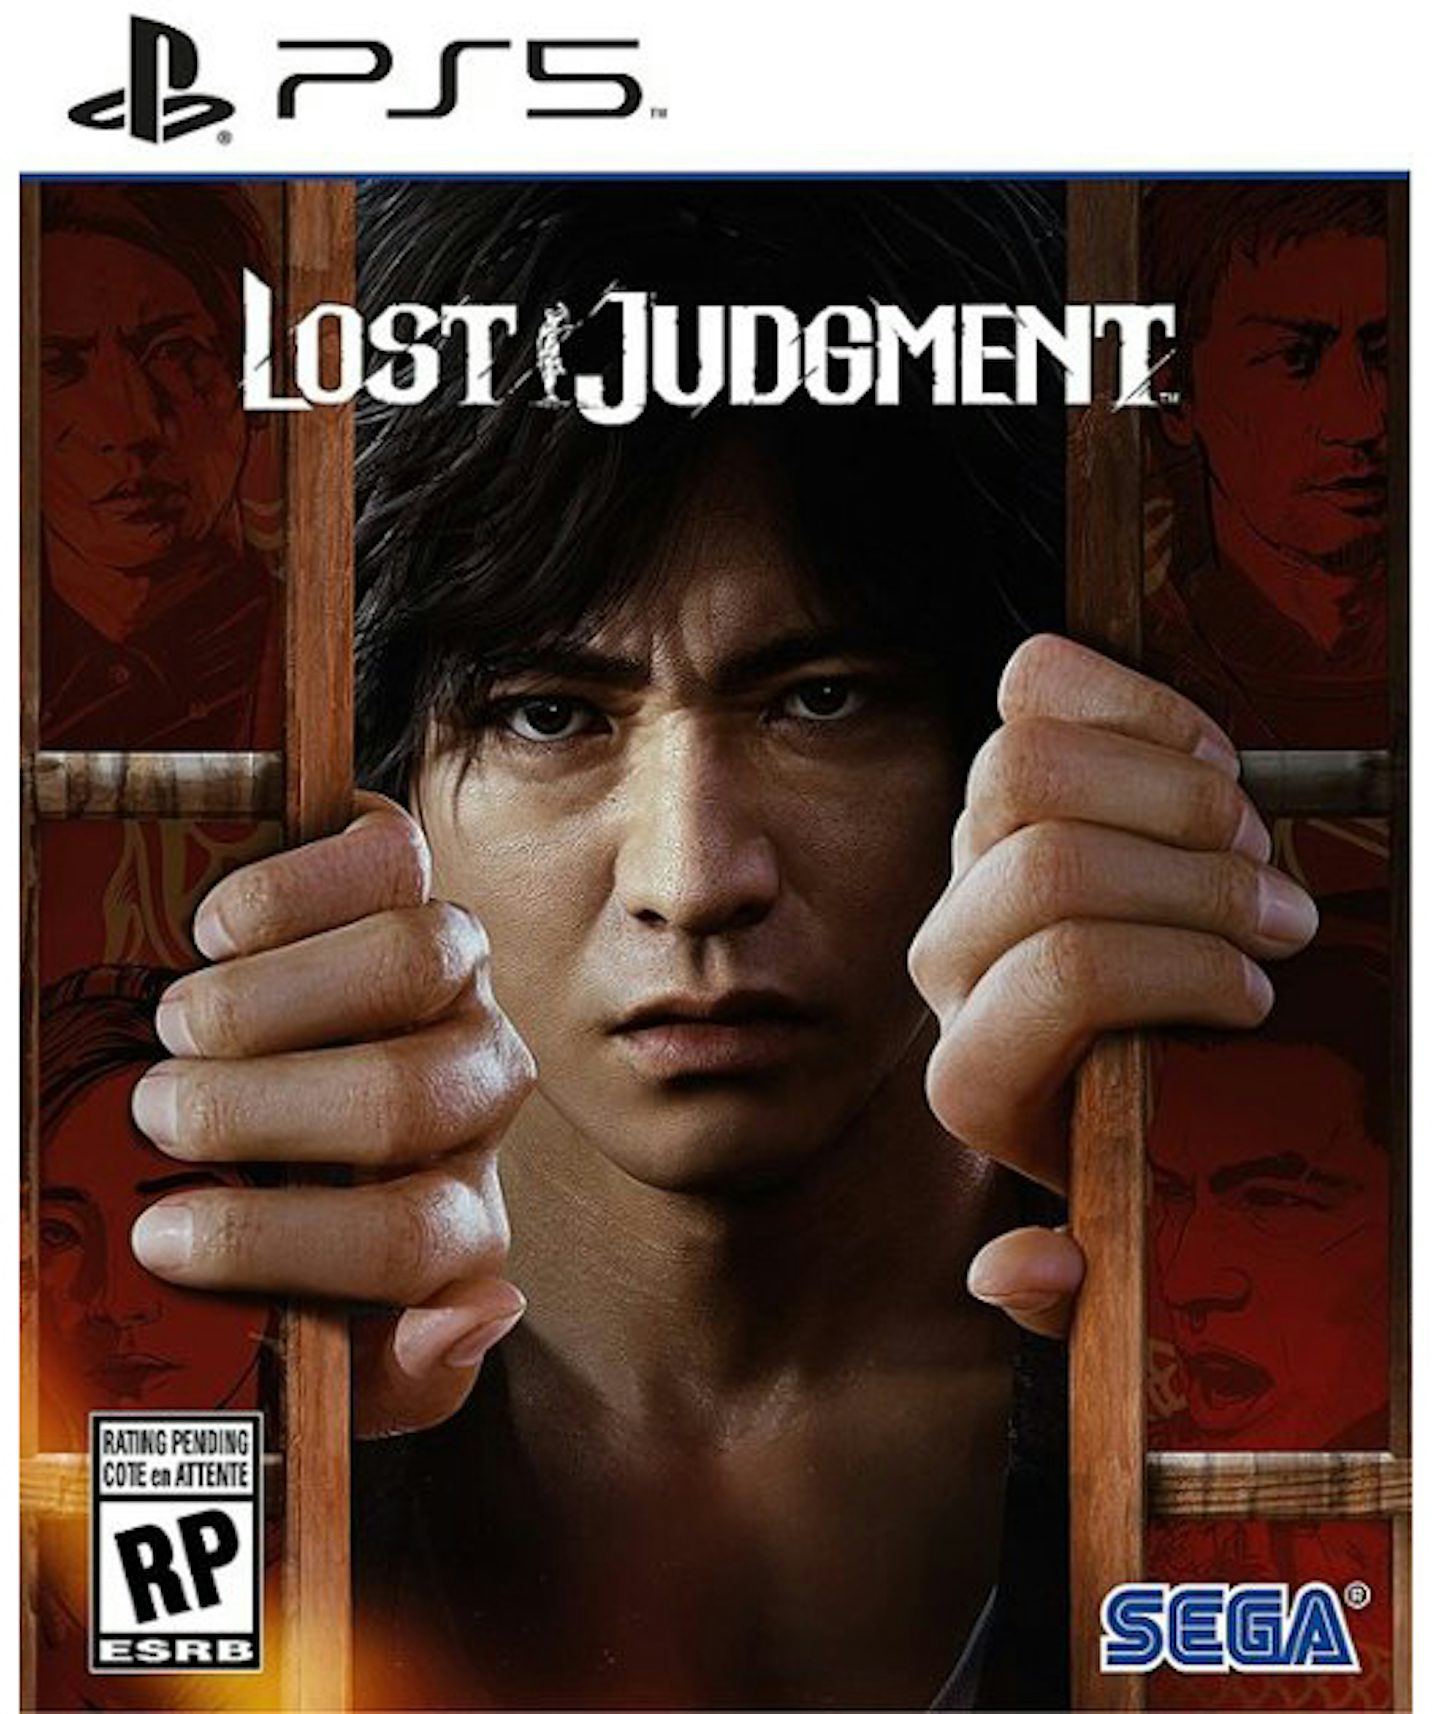 Lost Judgment PS5 - DiscoAzul.com